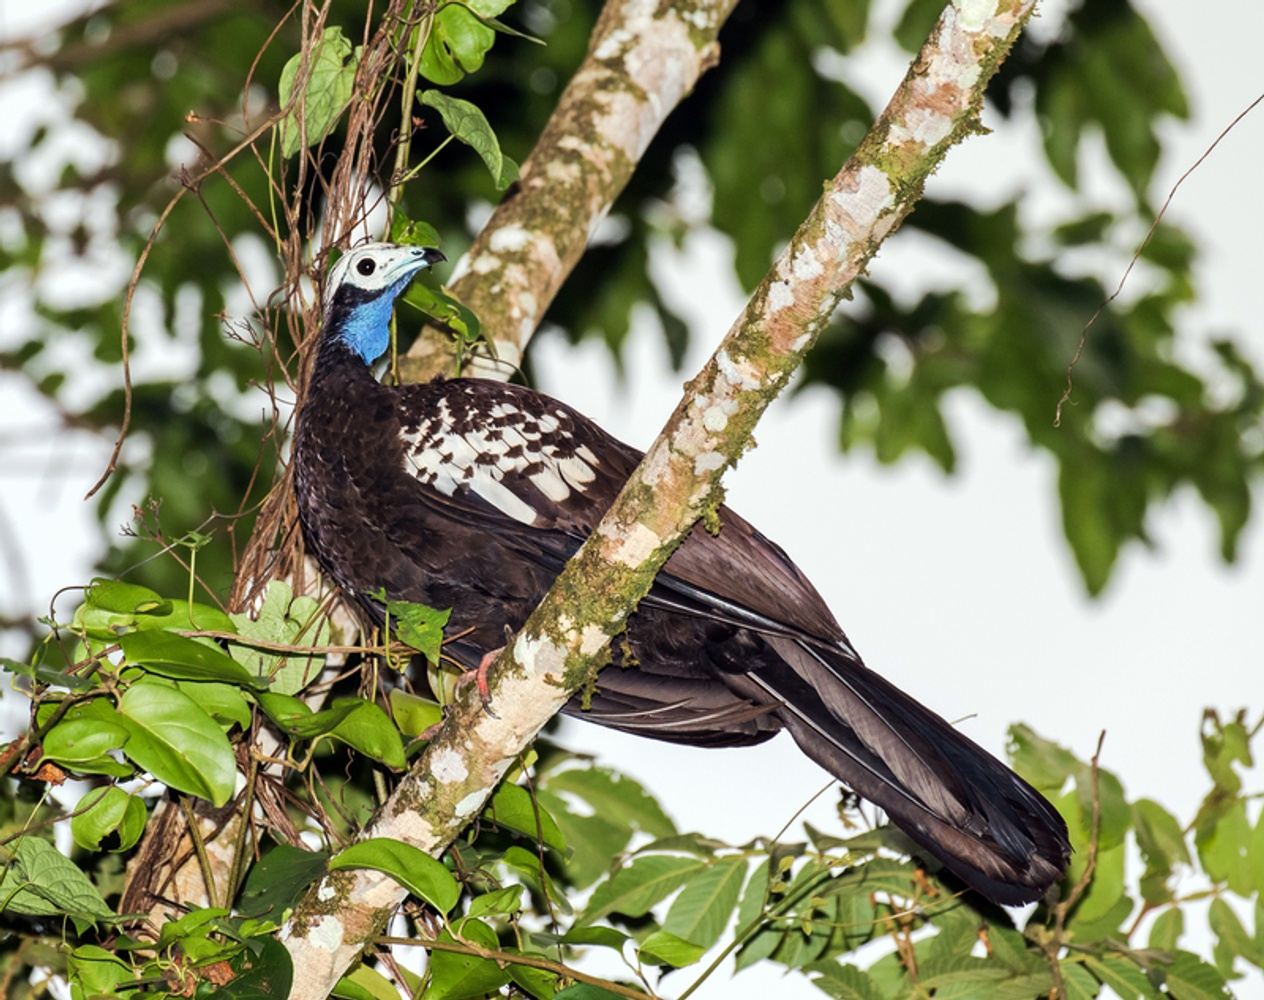 Trinidad & Tobago - Piping Guans, Bellbirds & More